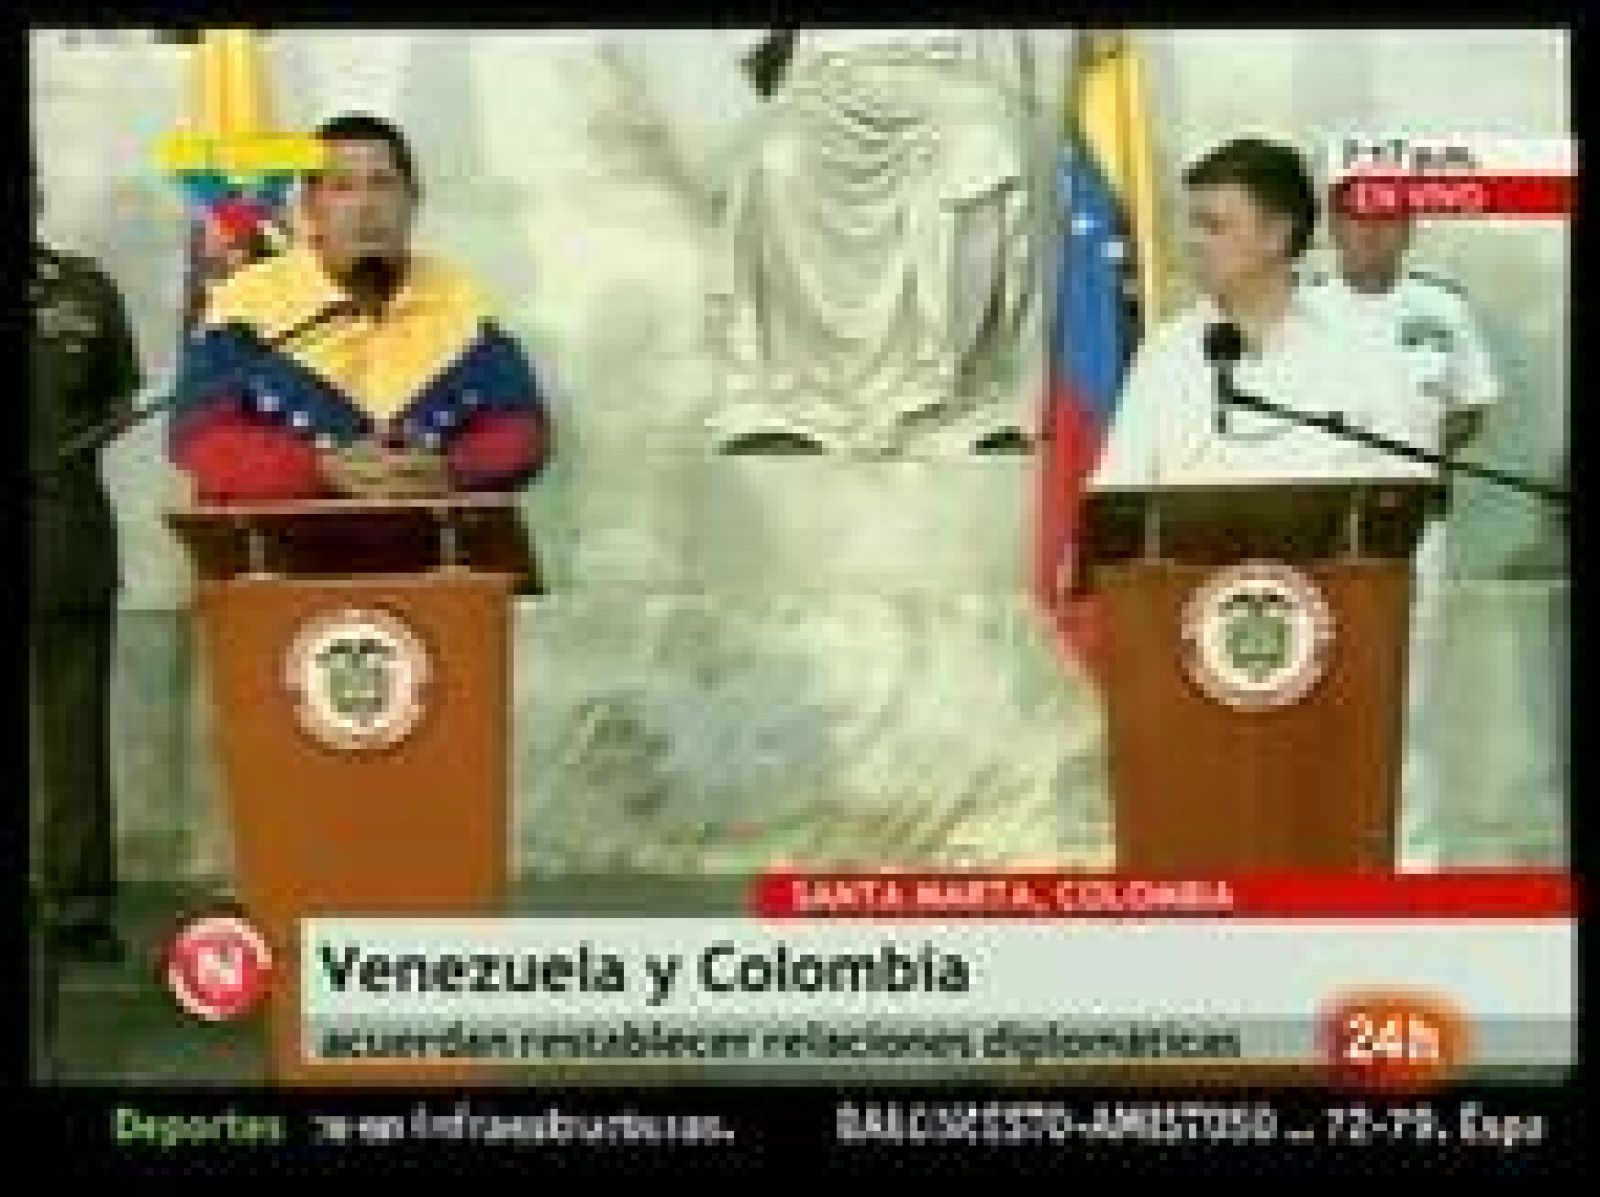  Los presidentes de Venezuela, Hugo Chávez, y de Colombia, Juan Manuel Santos, han anunciado este miércoles el restablecimiento de las relaciones diplomáticas entre los dos países, rotas el pasado 22 de julio y tras más de un año congeladas.